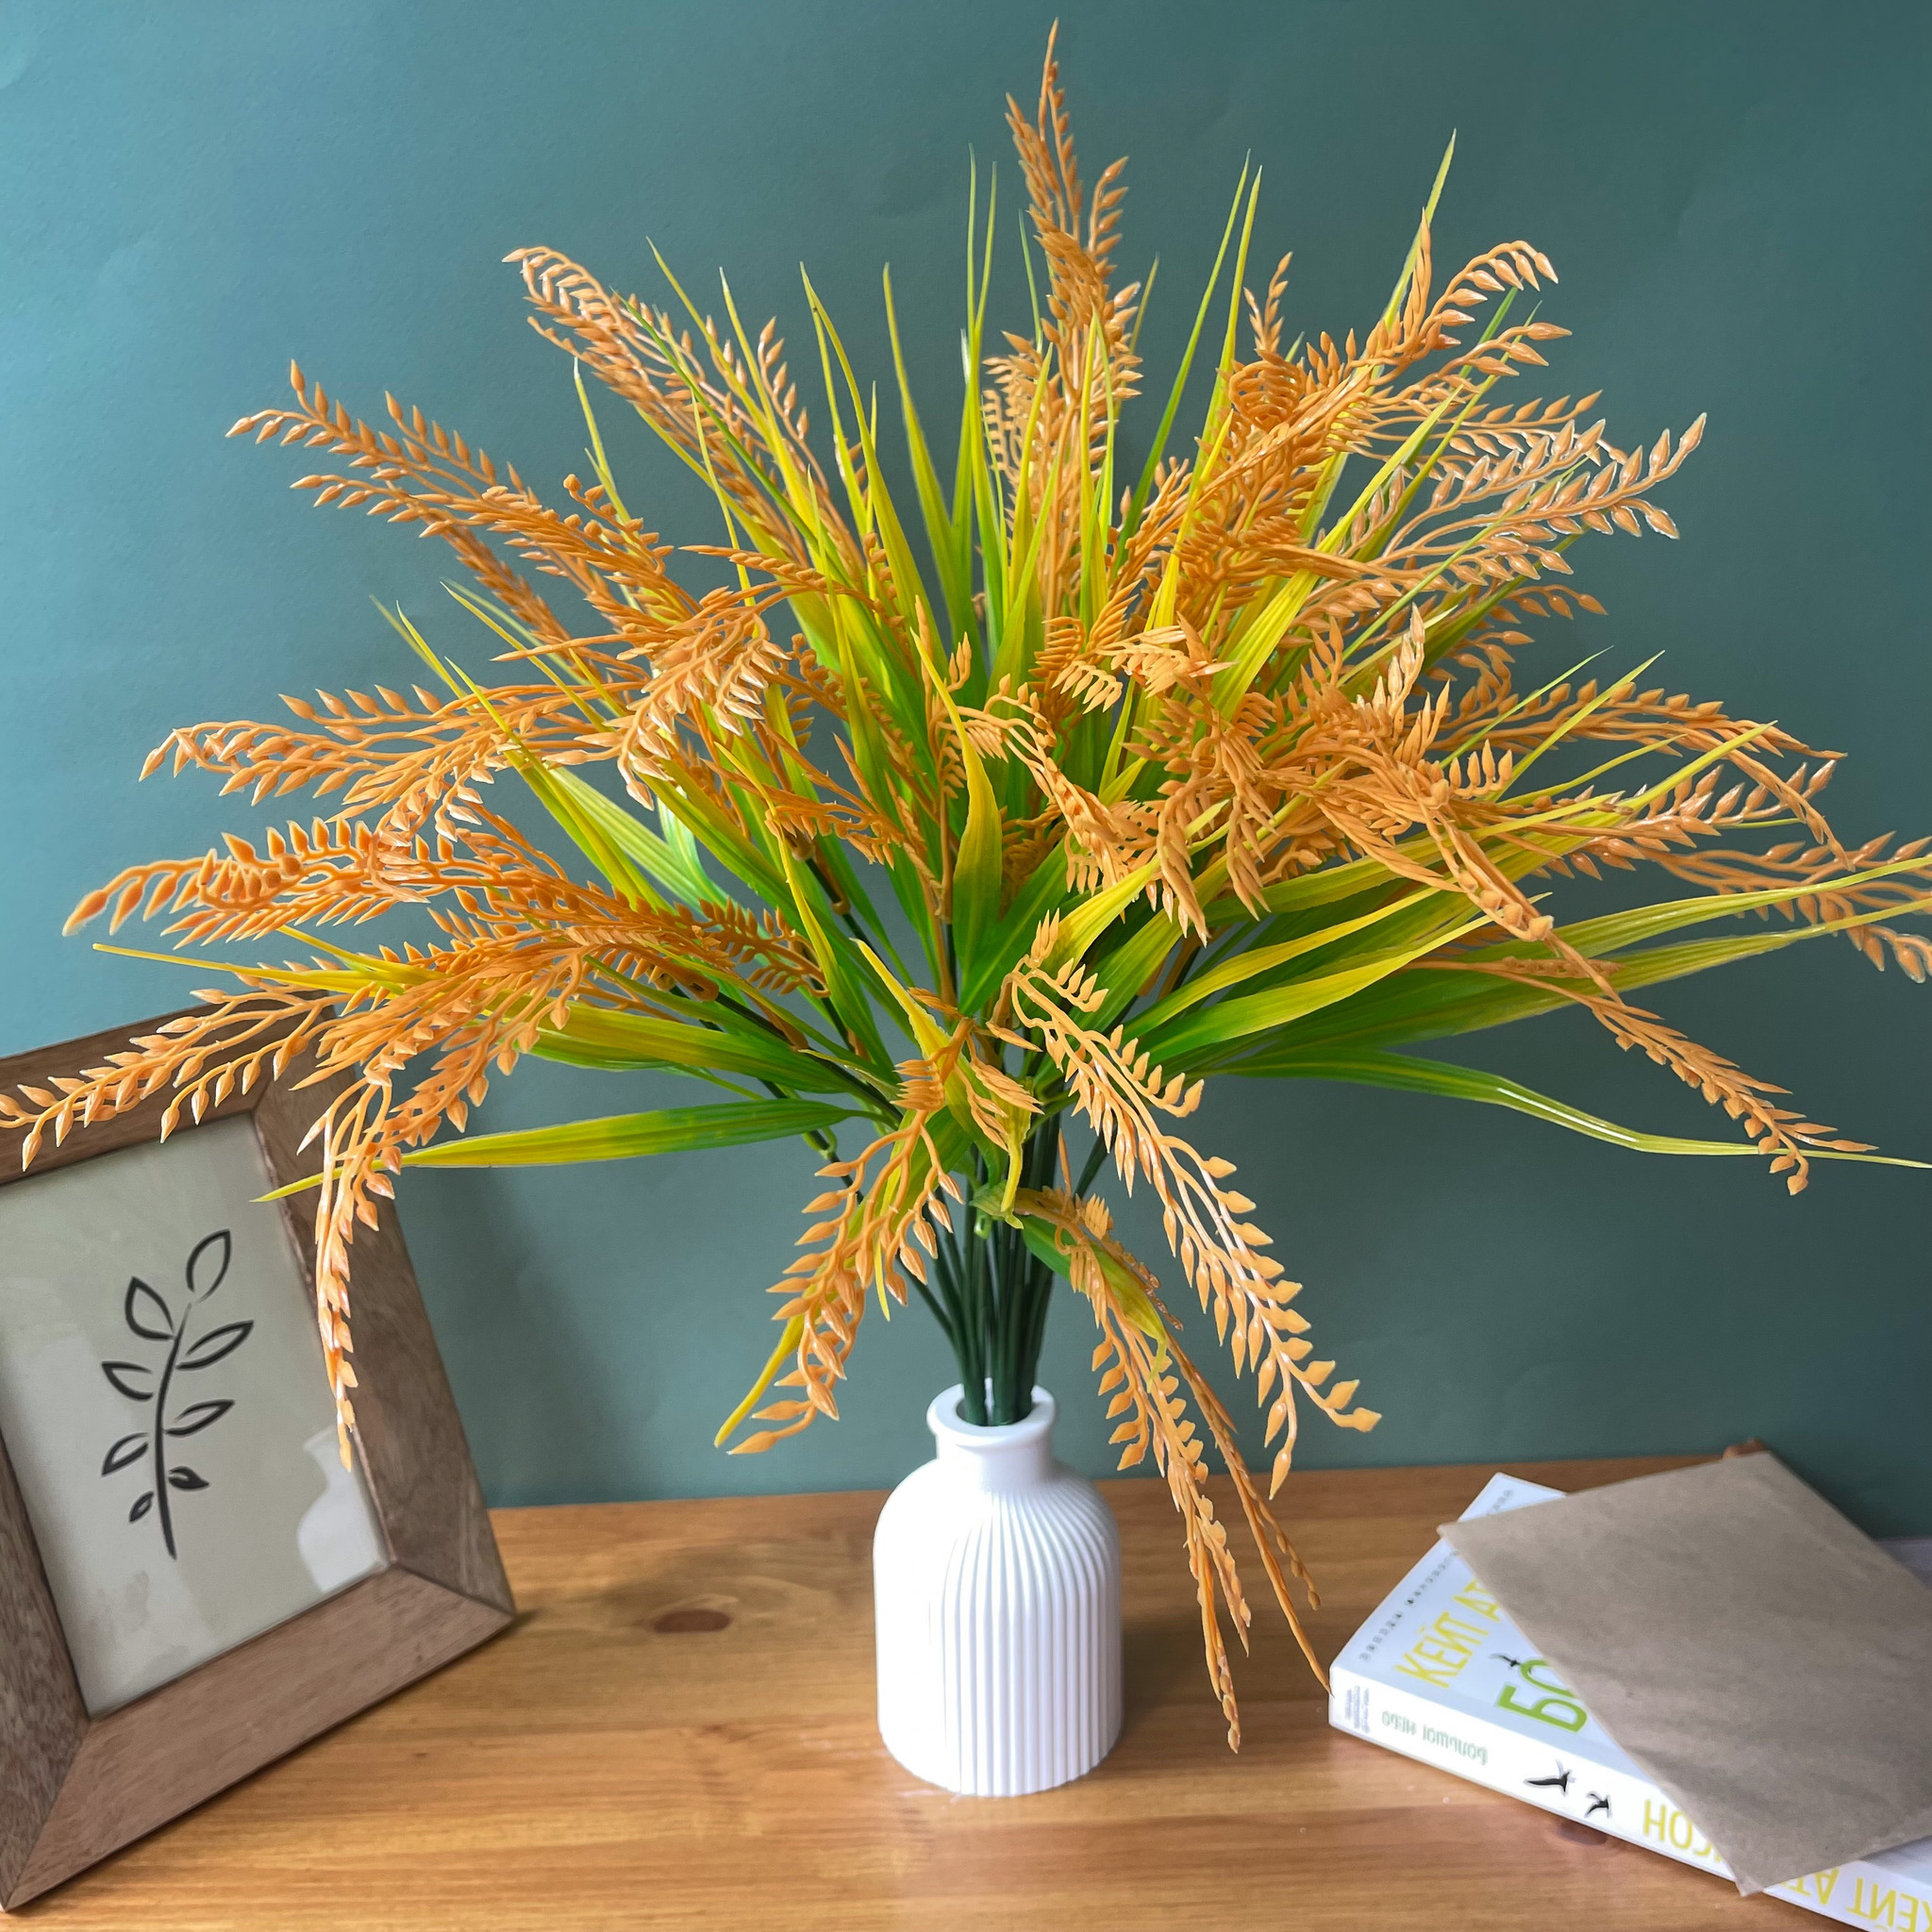 Колосья Пшеницы искусственные 77 см купить по цене грн в магазине рукоделия идей